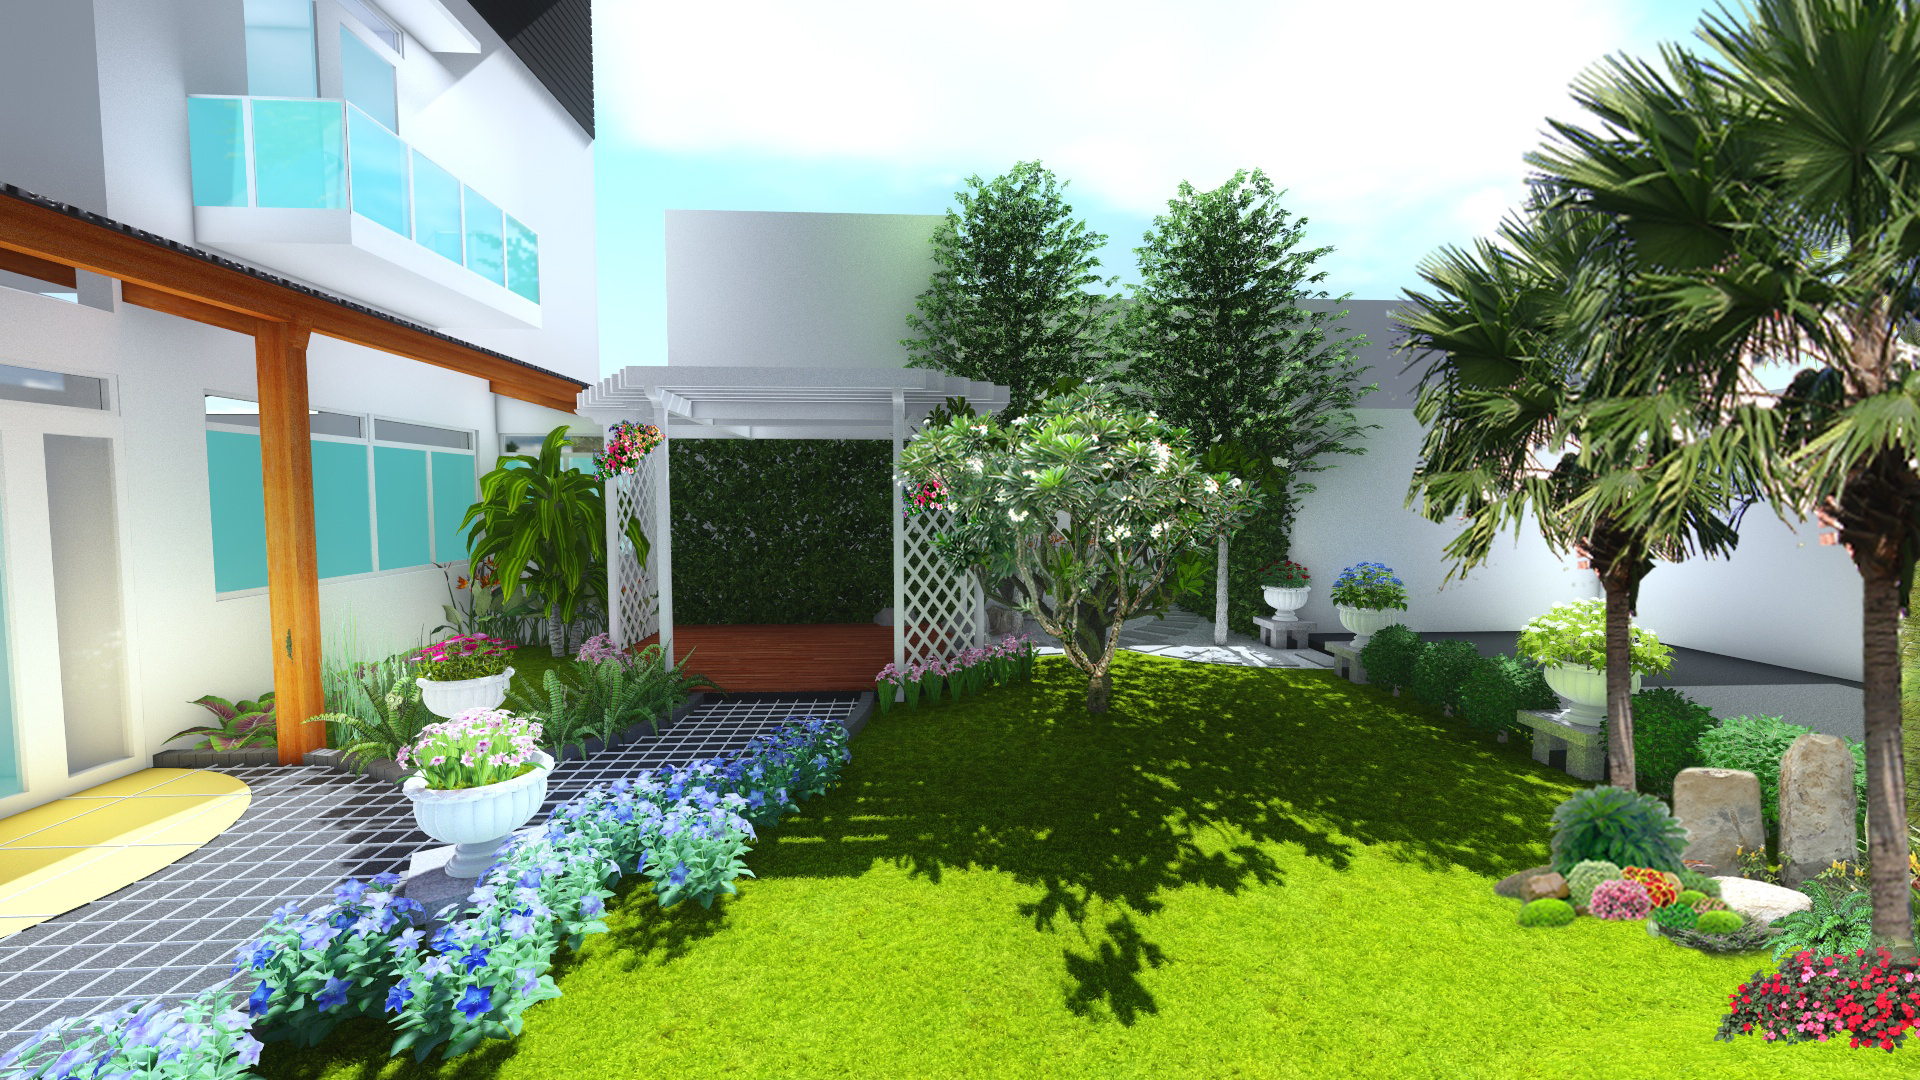 Cây cảnh sân vườn yếu tố giúp sân vườn thêm trong xanh